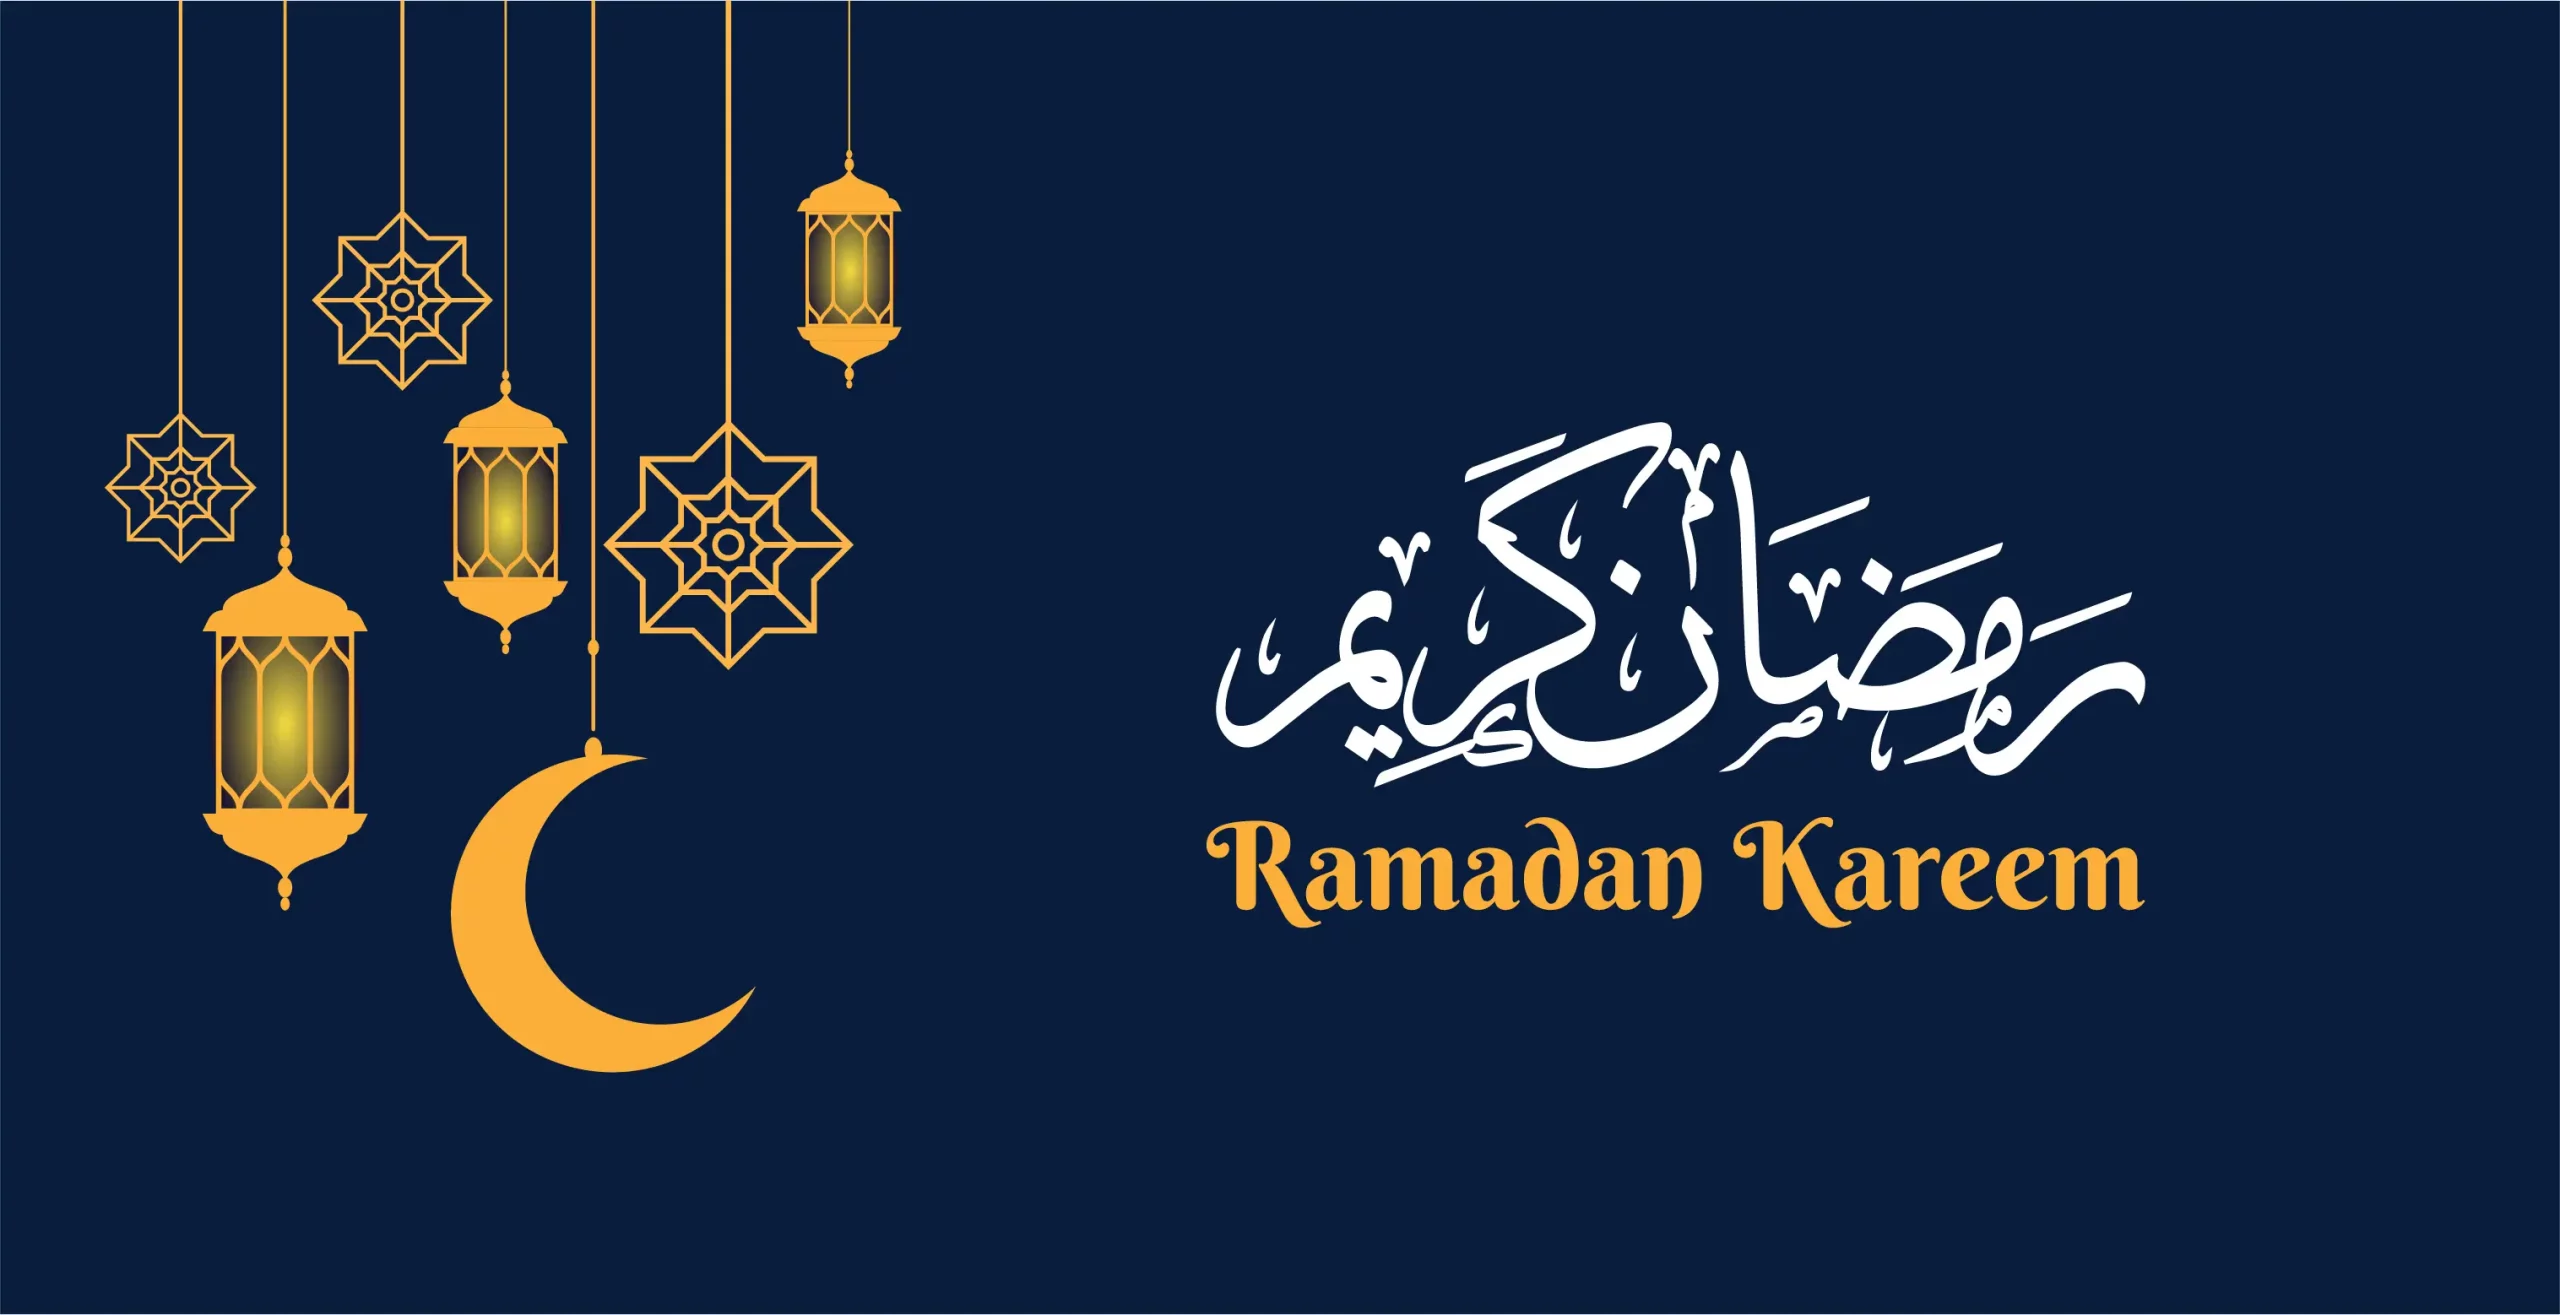 روزه گرفتن و تبریک ماه رمضان به زبان عربی (فصیح و لهجه شامی)